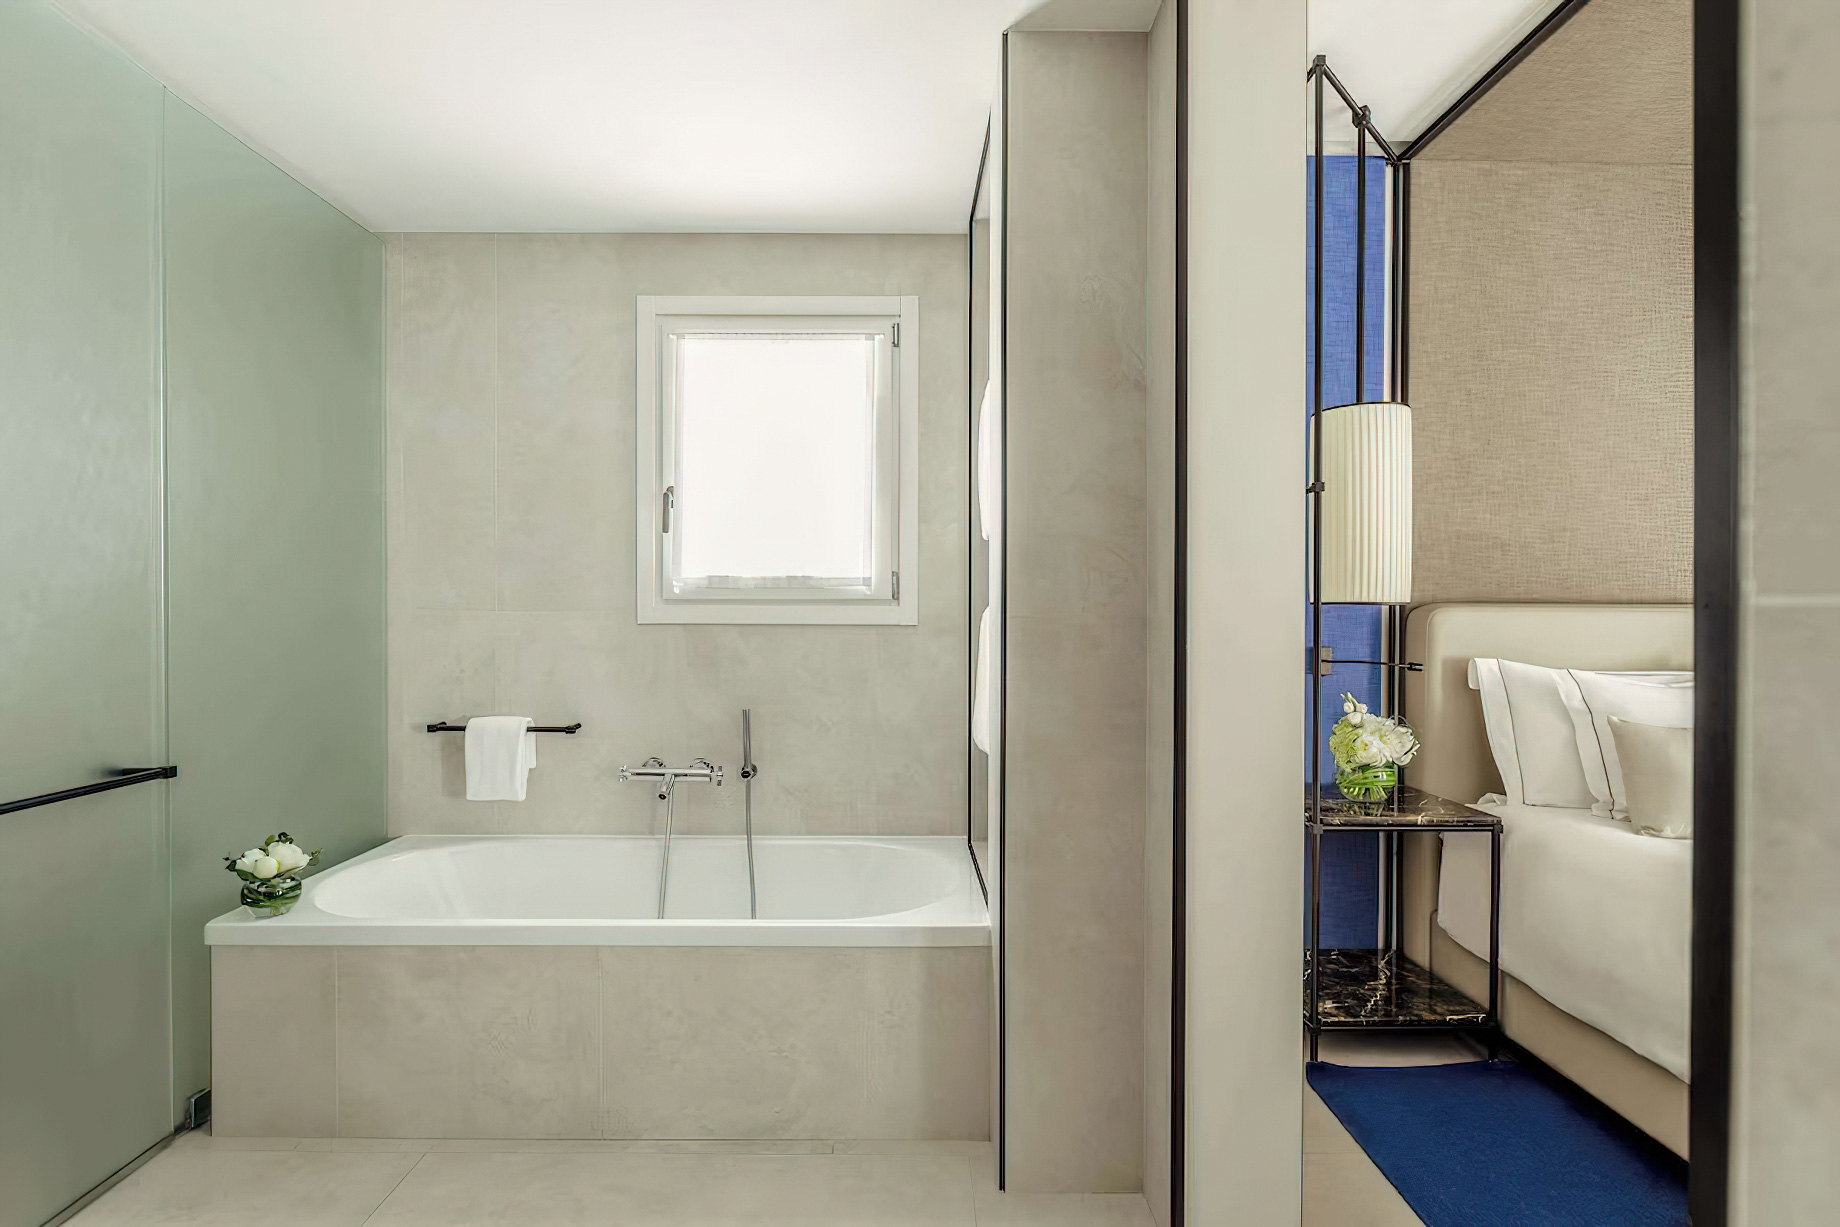 Tivoli Portopiccolo Sistiana Resort & Spa – Sistiana, Italy – Guest Bathroom